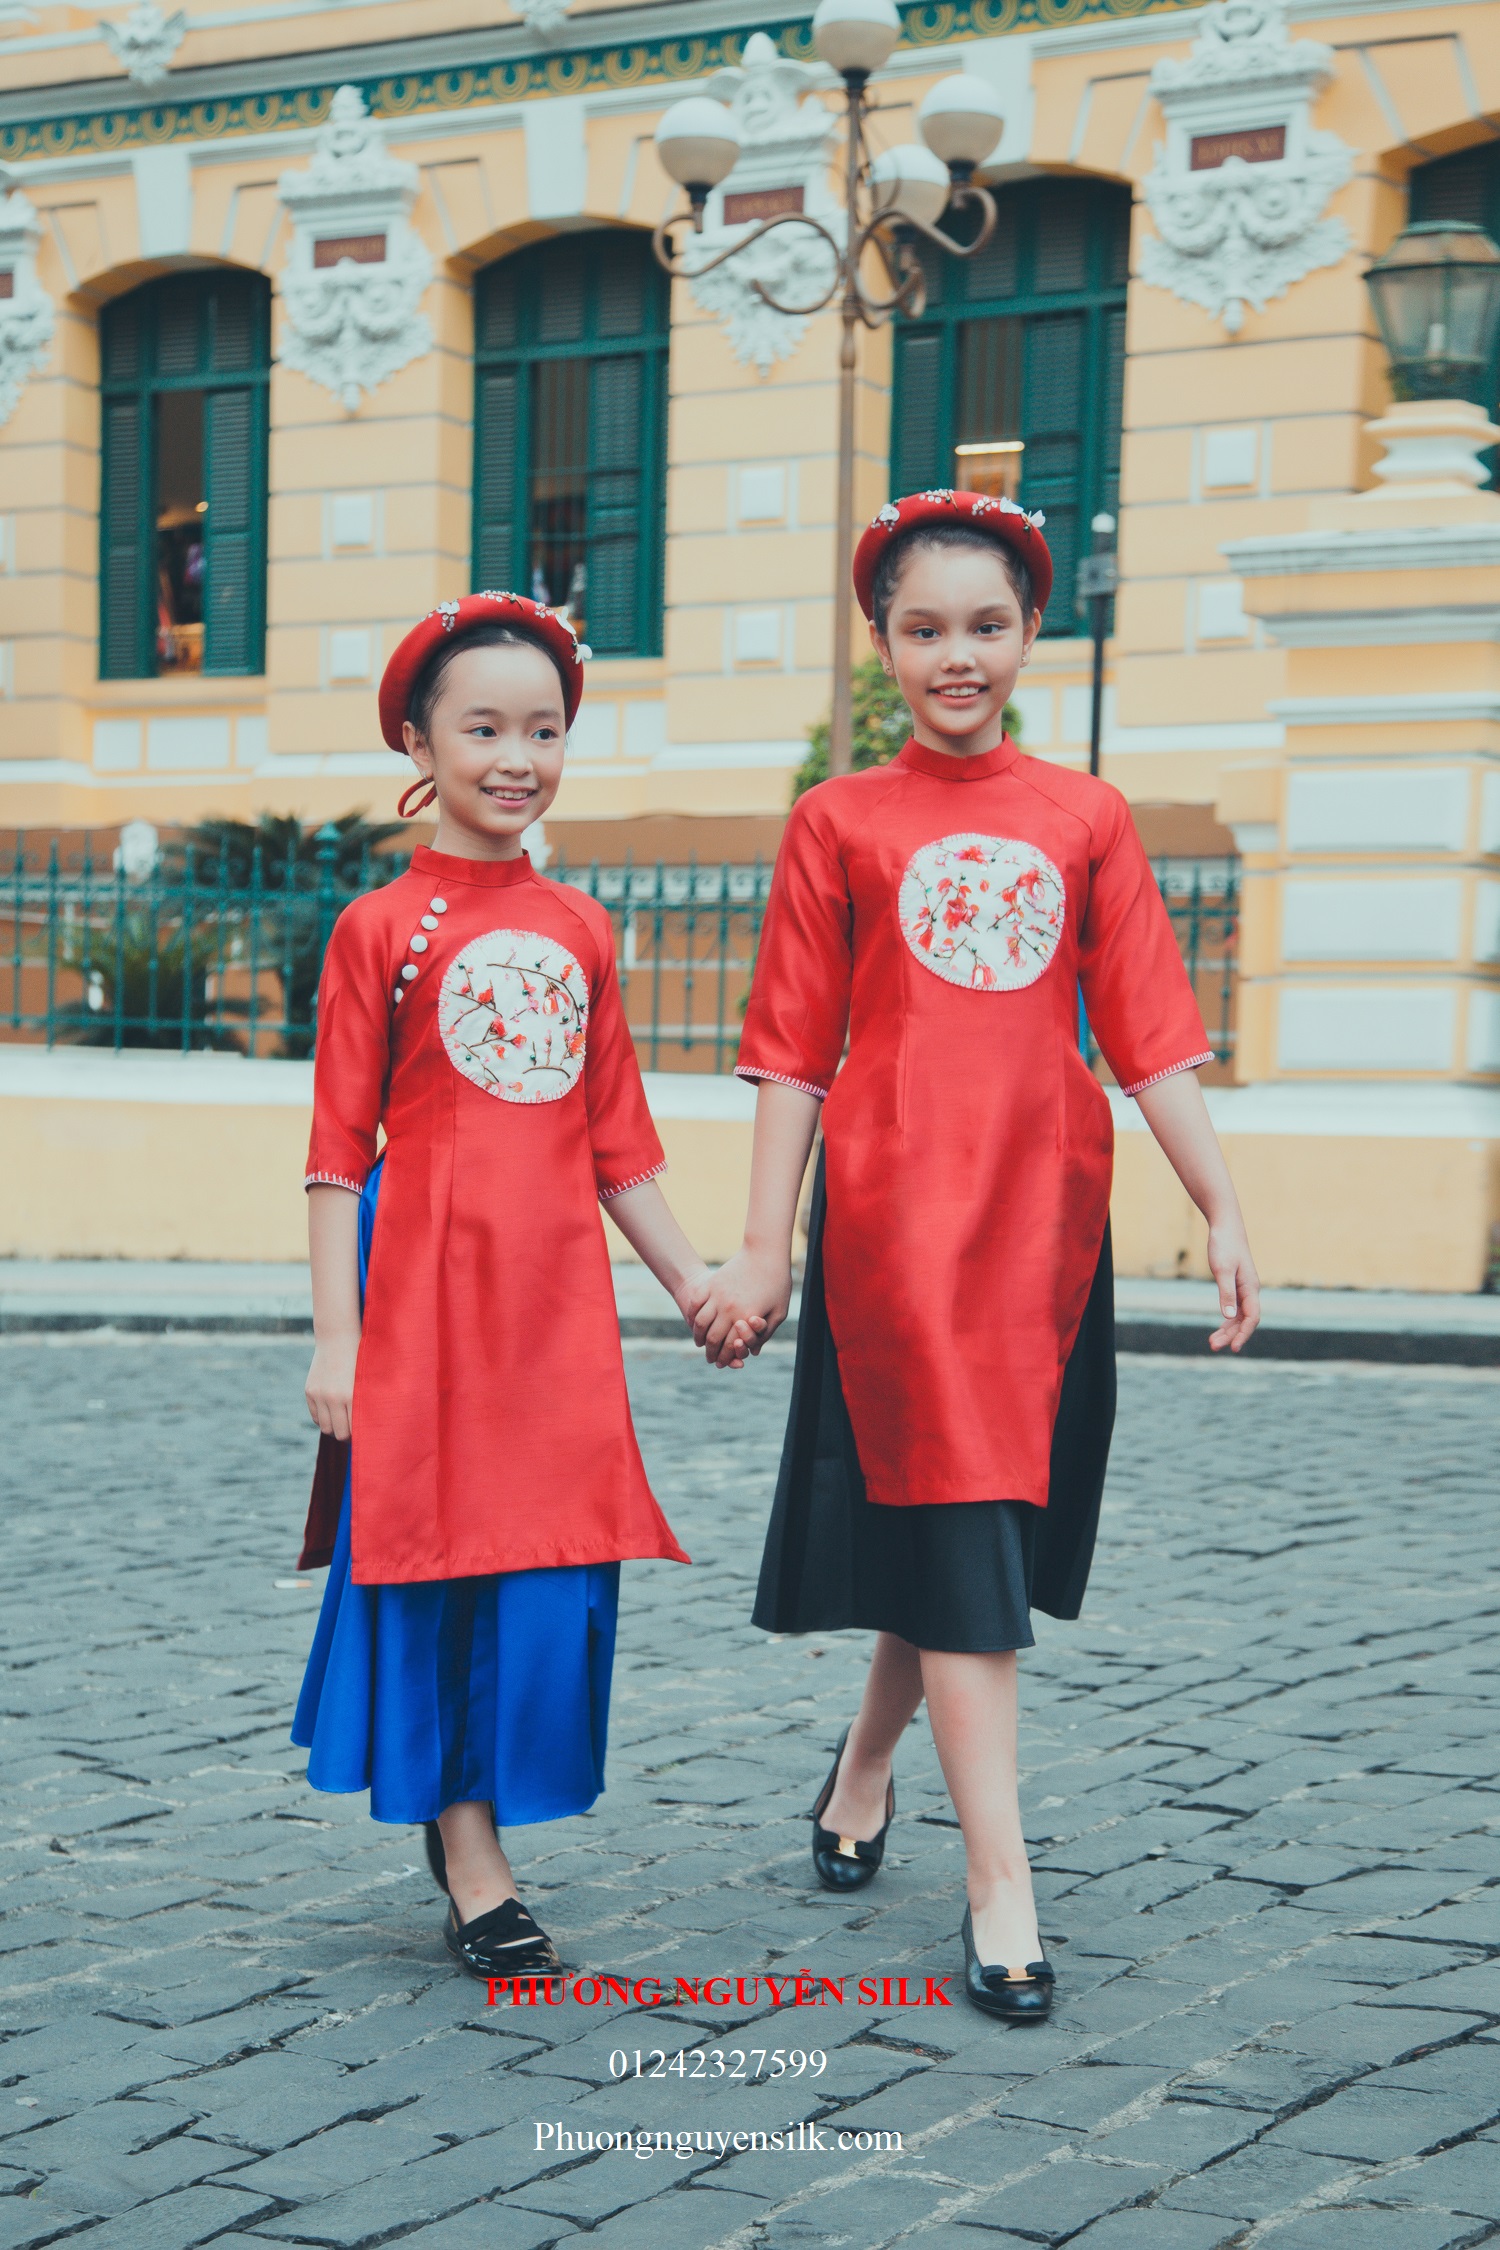 Áo dài trẻ em Phương Nguyễn Silk là một thương hiệu trẻ em lâu đời